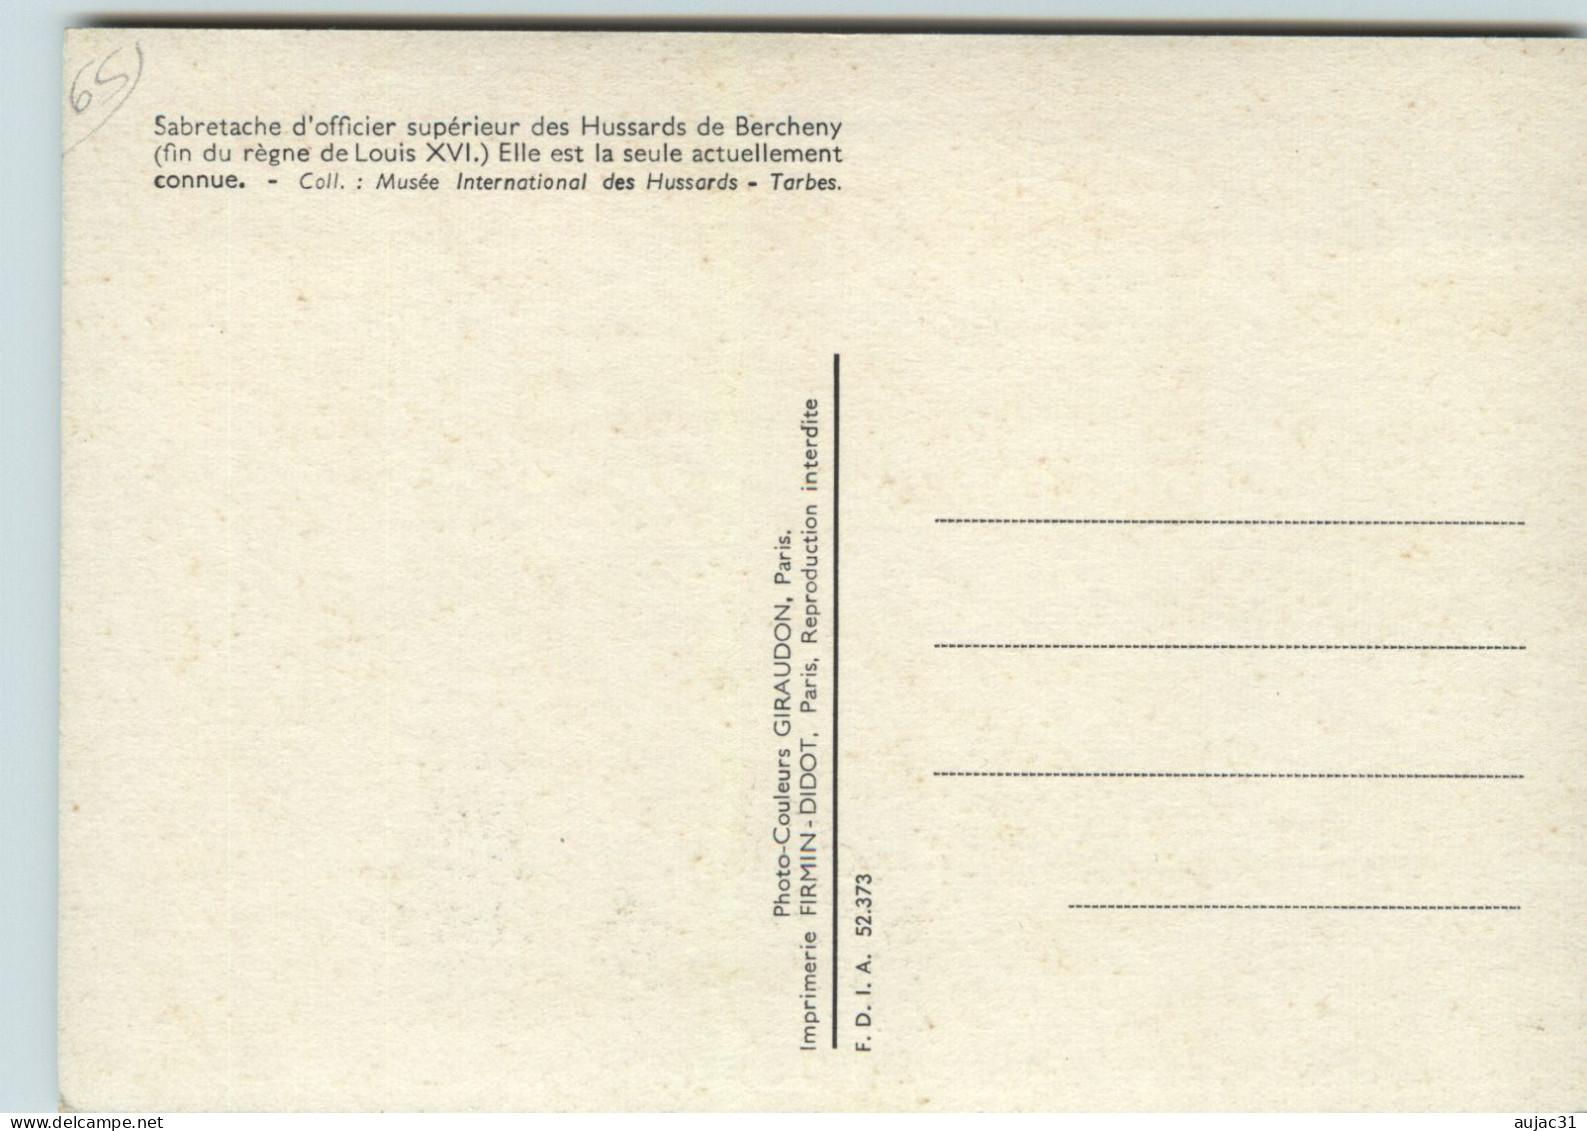 Dép 65 - Militaria - Tarbes - Musée International des Hussards - 5 cartes - état